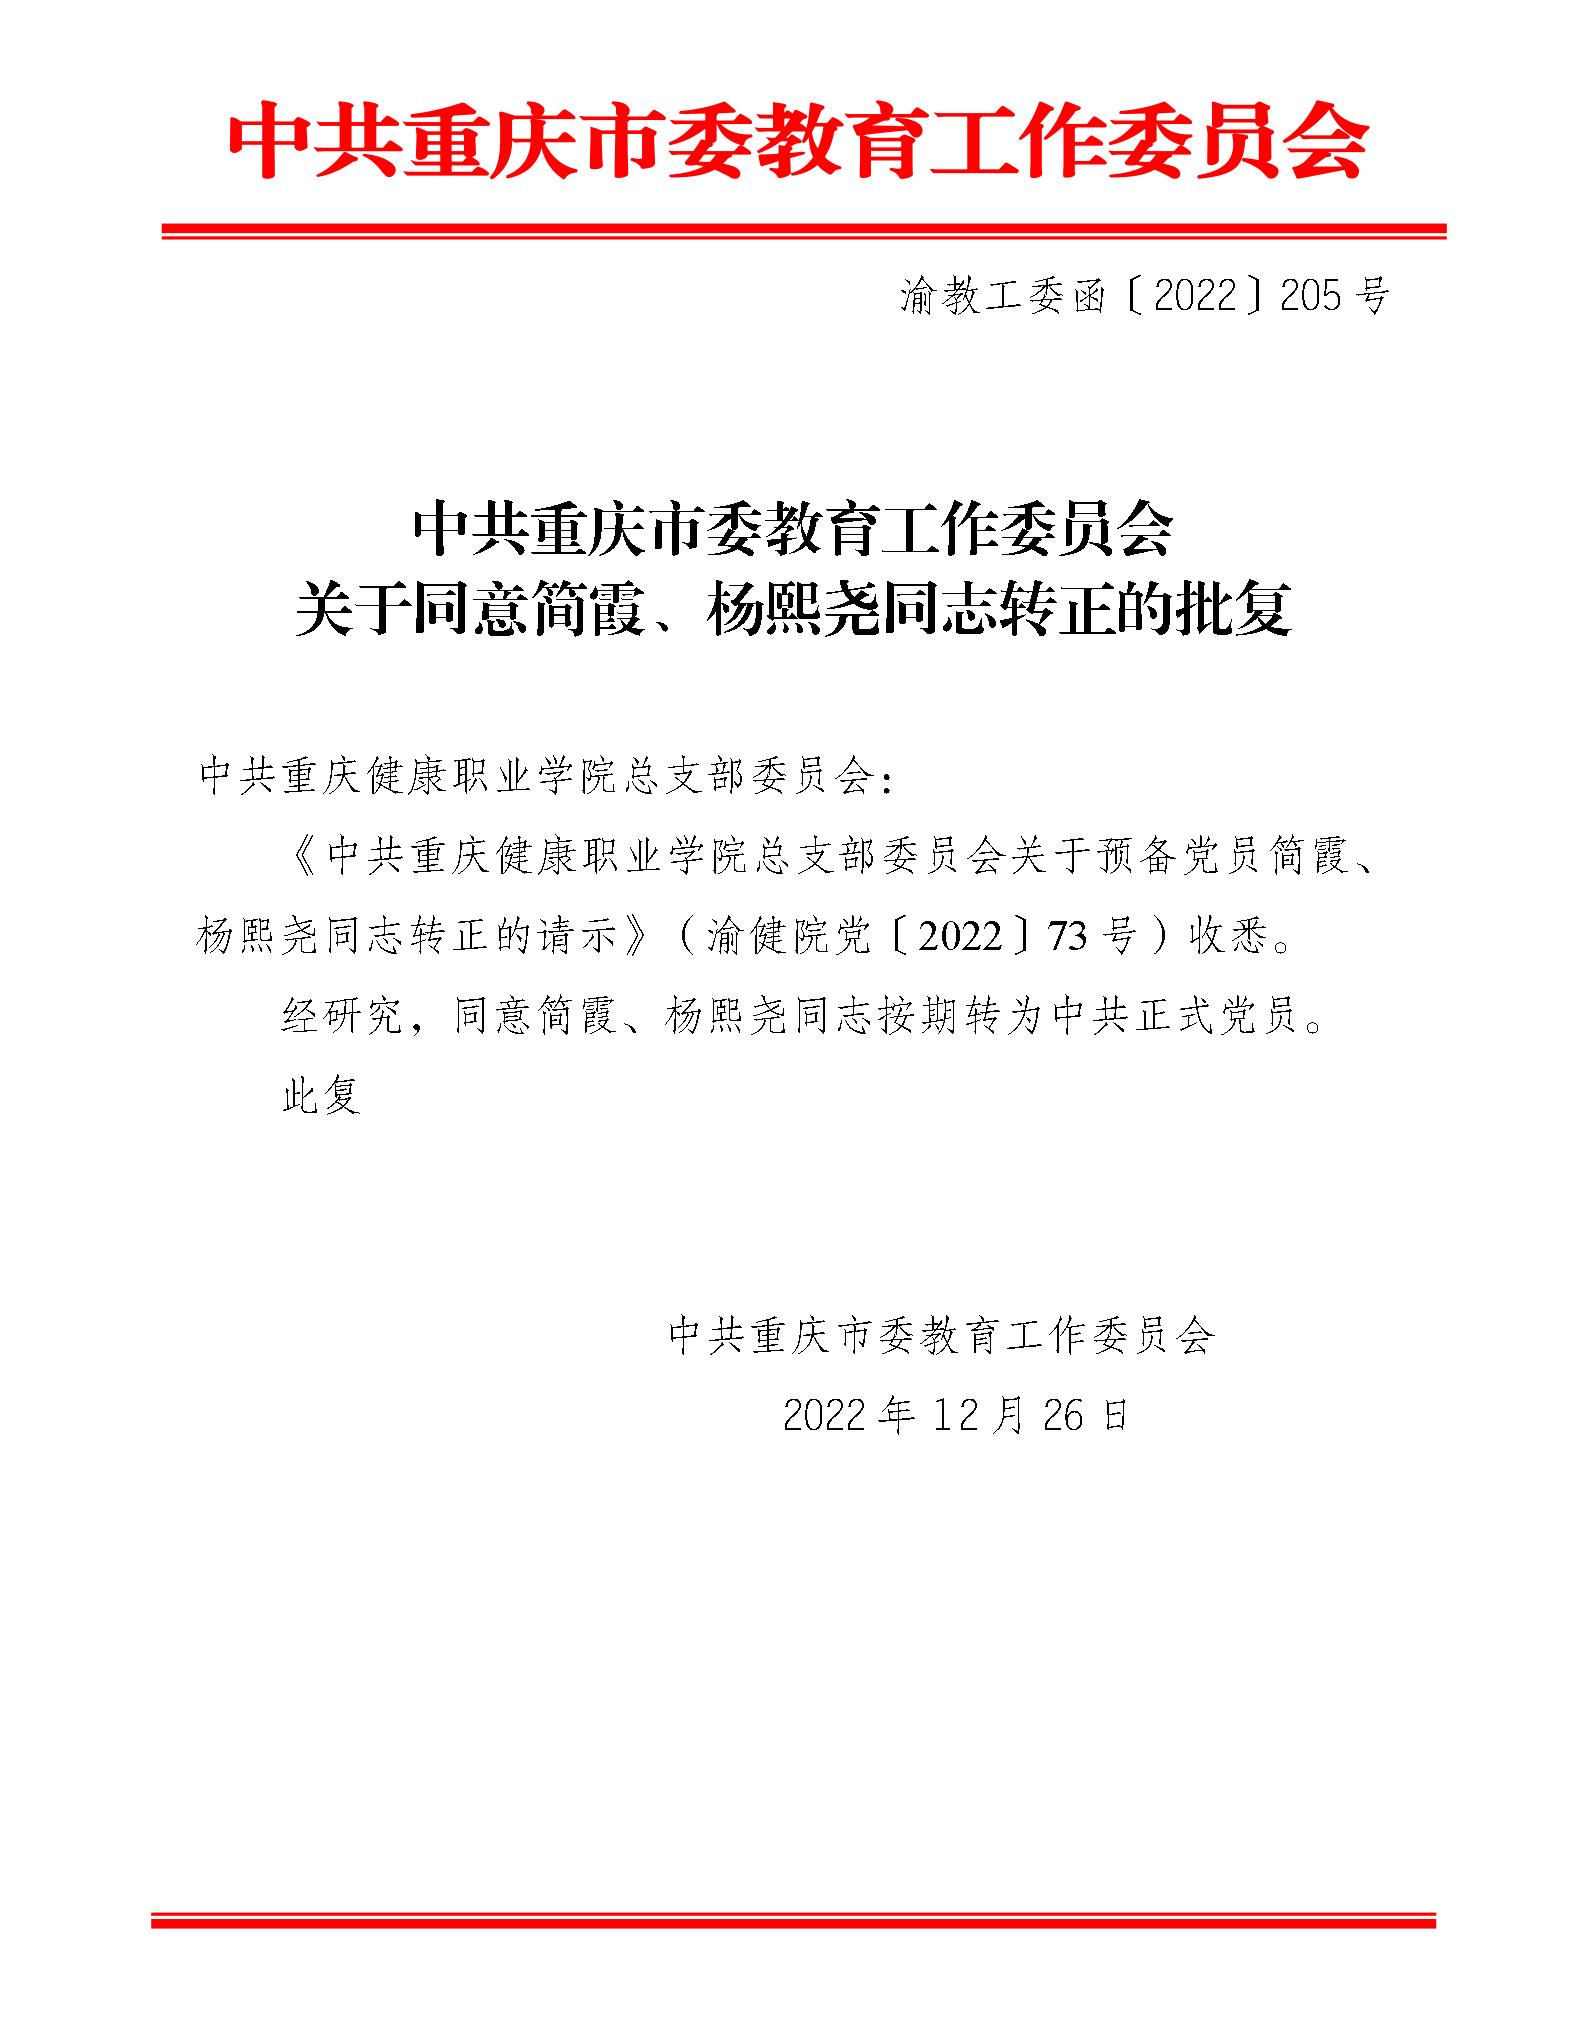 中共重庆市委教育工作委员会关于同意简霞、杨熙尧同志转正的批复_01.jpg